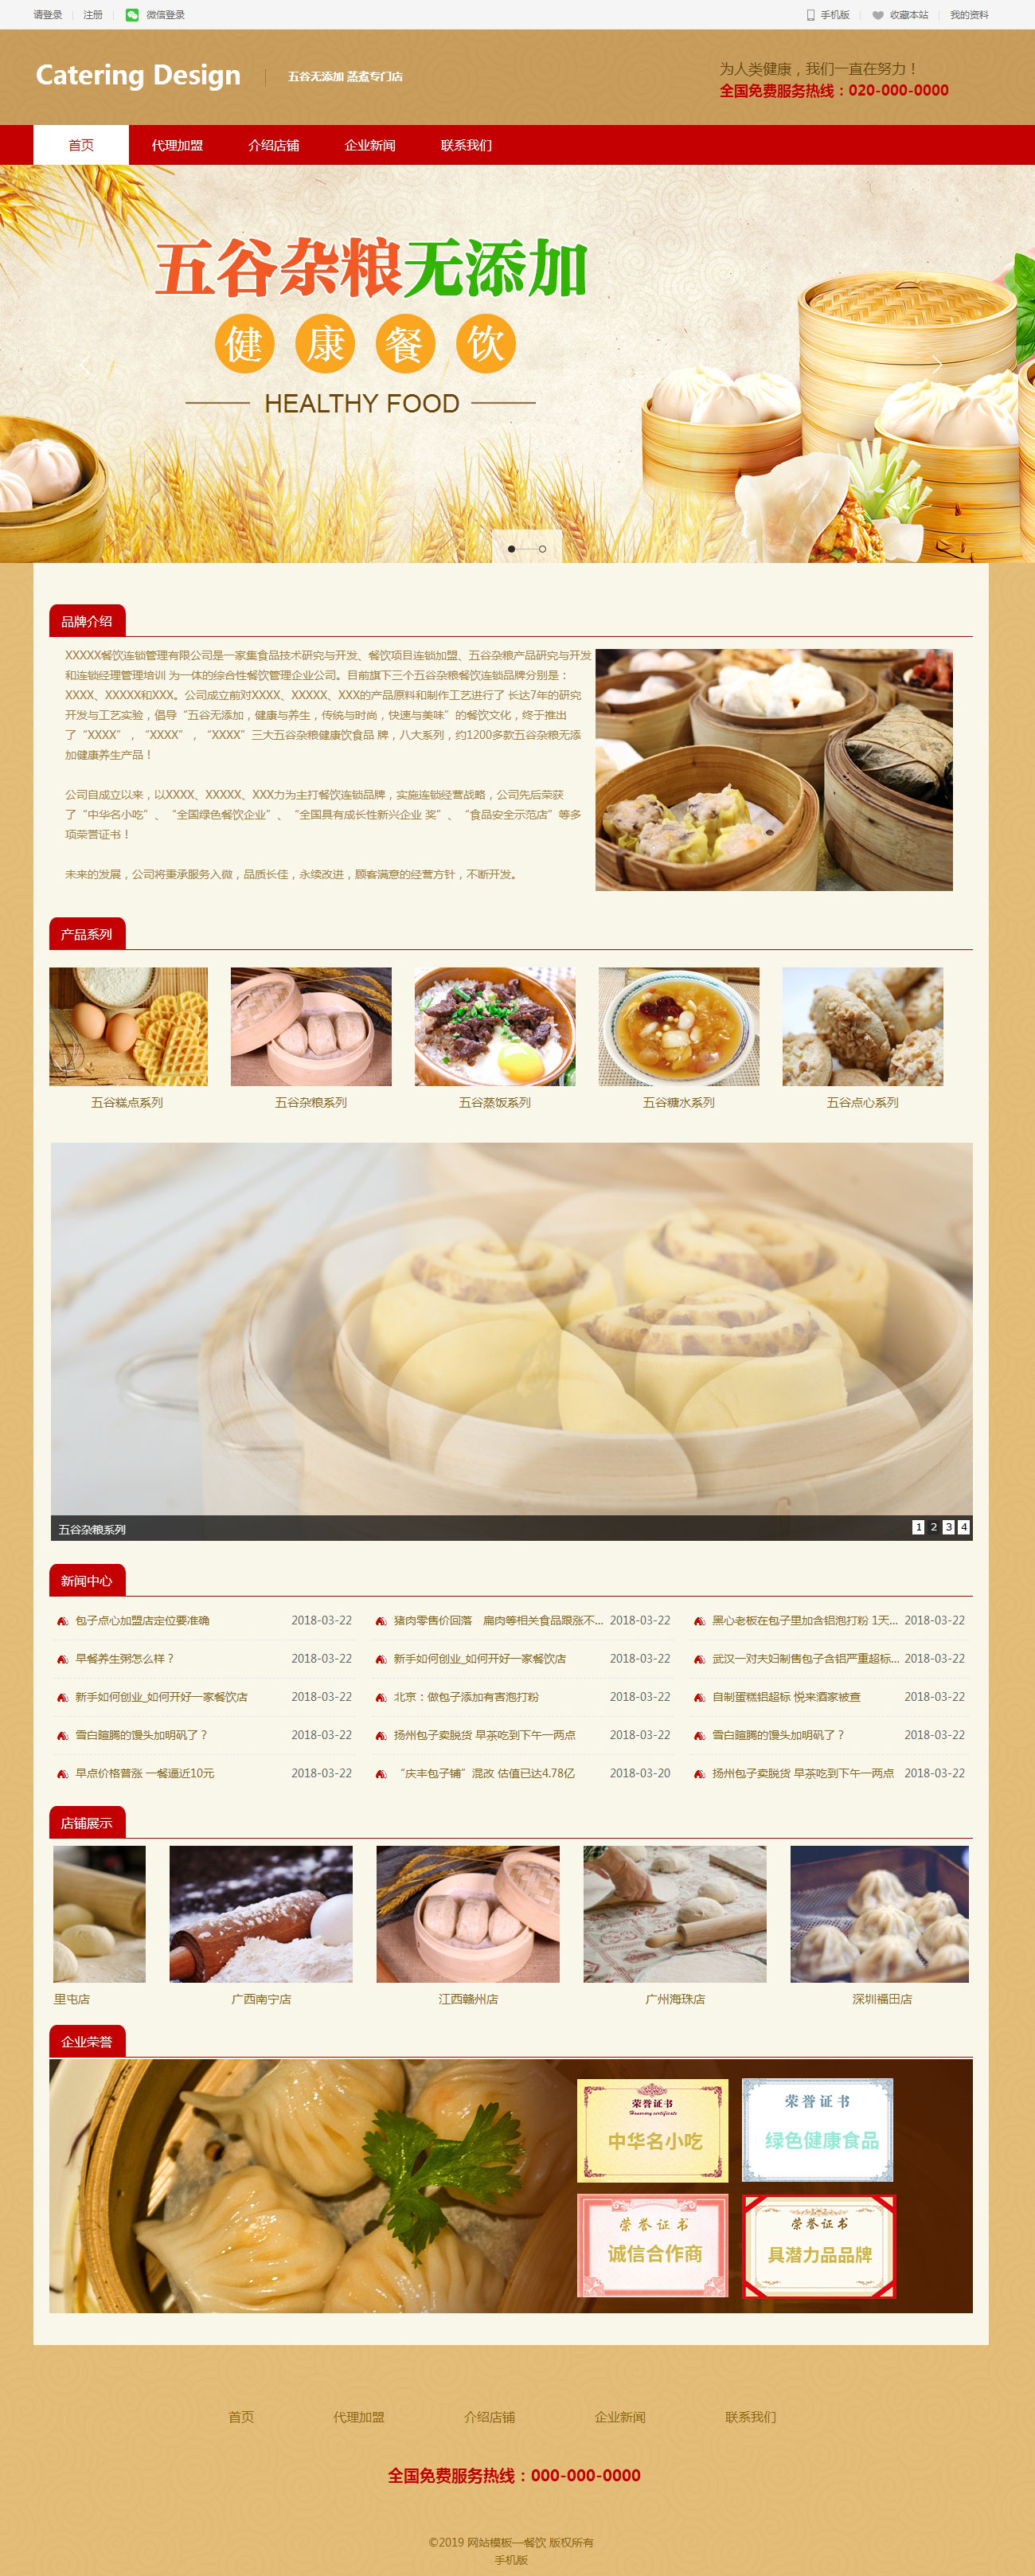 餐饮、五谷杂粮、生产代理加盟展示网页模板